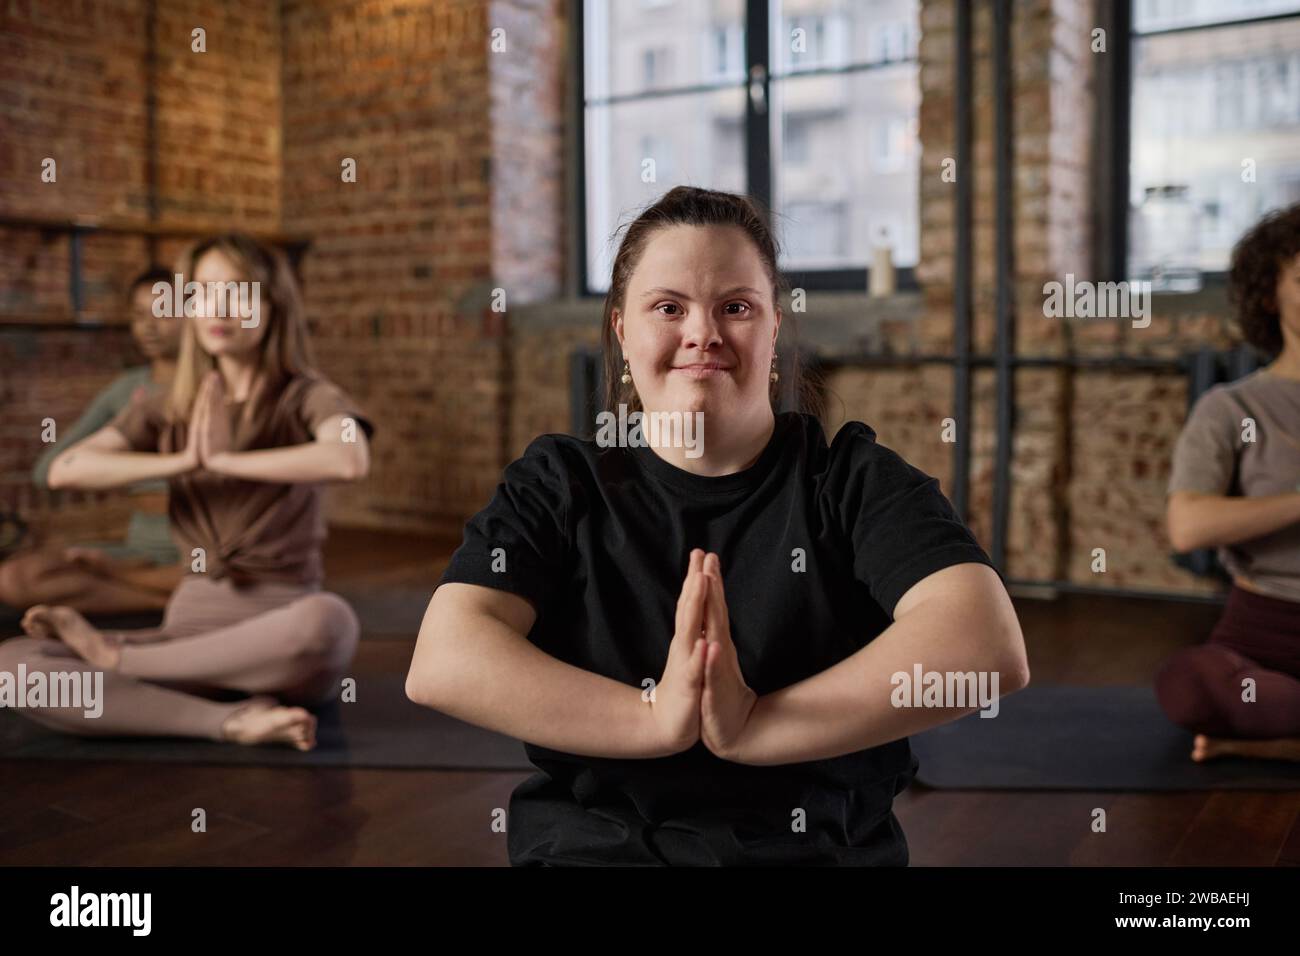 Aktives Mädchen mit Behinderung, das ihre Hände gegen die Brust legt und während des Yoga-Trainings mit anderen Frauen in die Kamera schaut Stockfoto